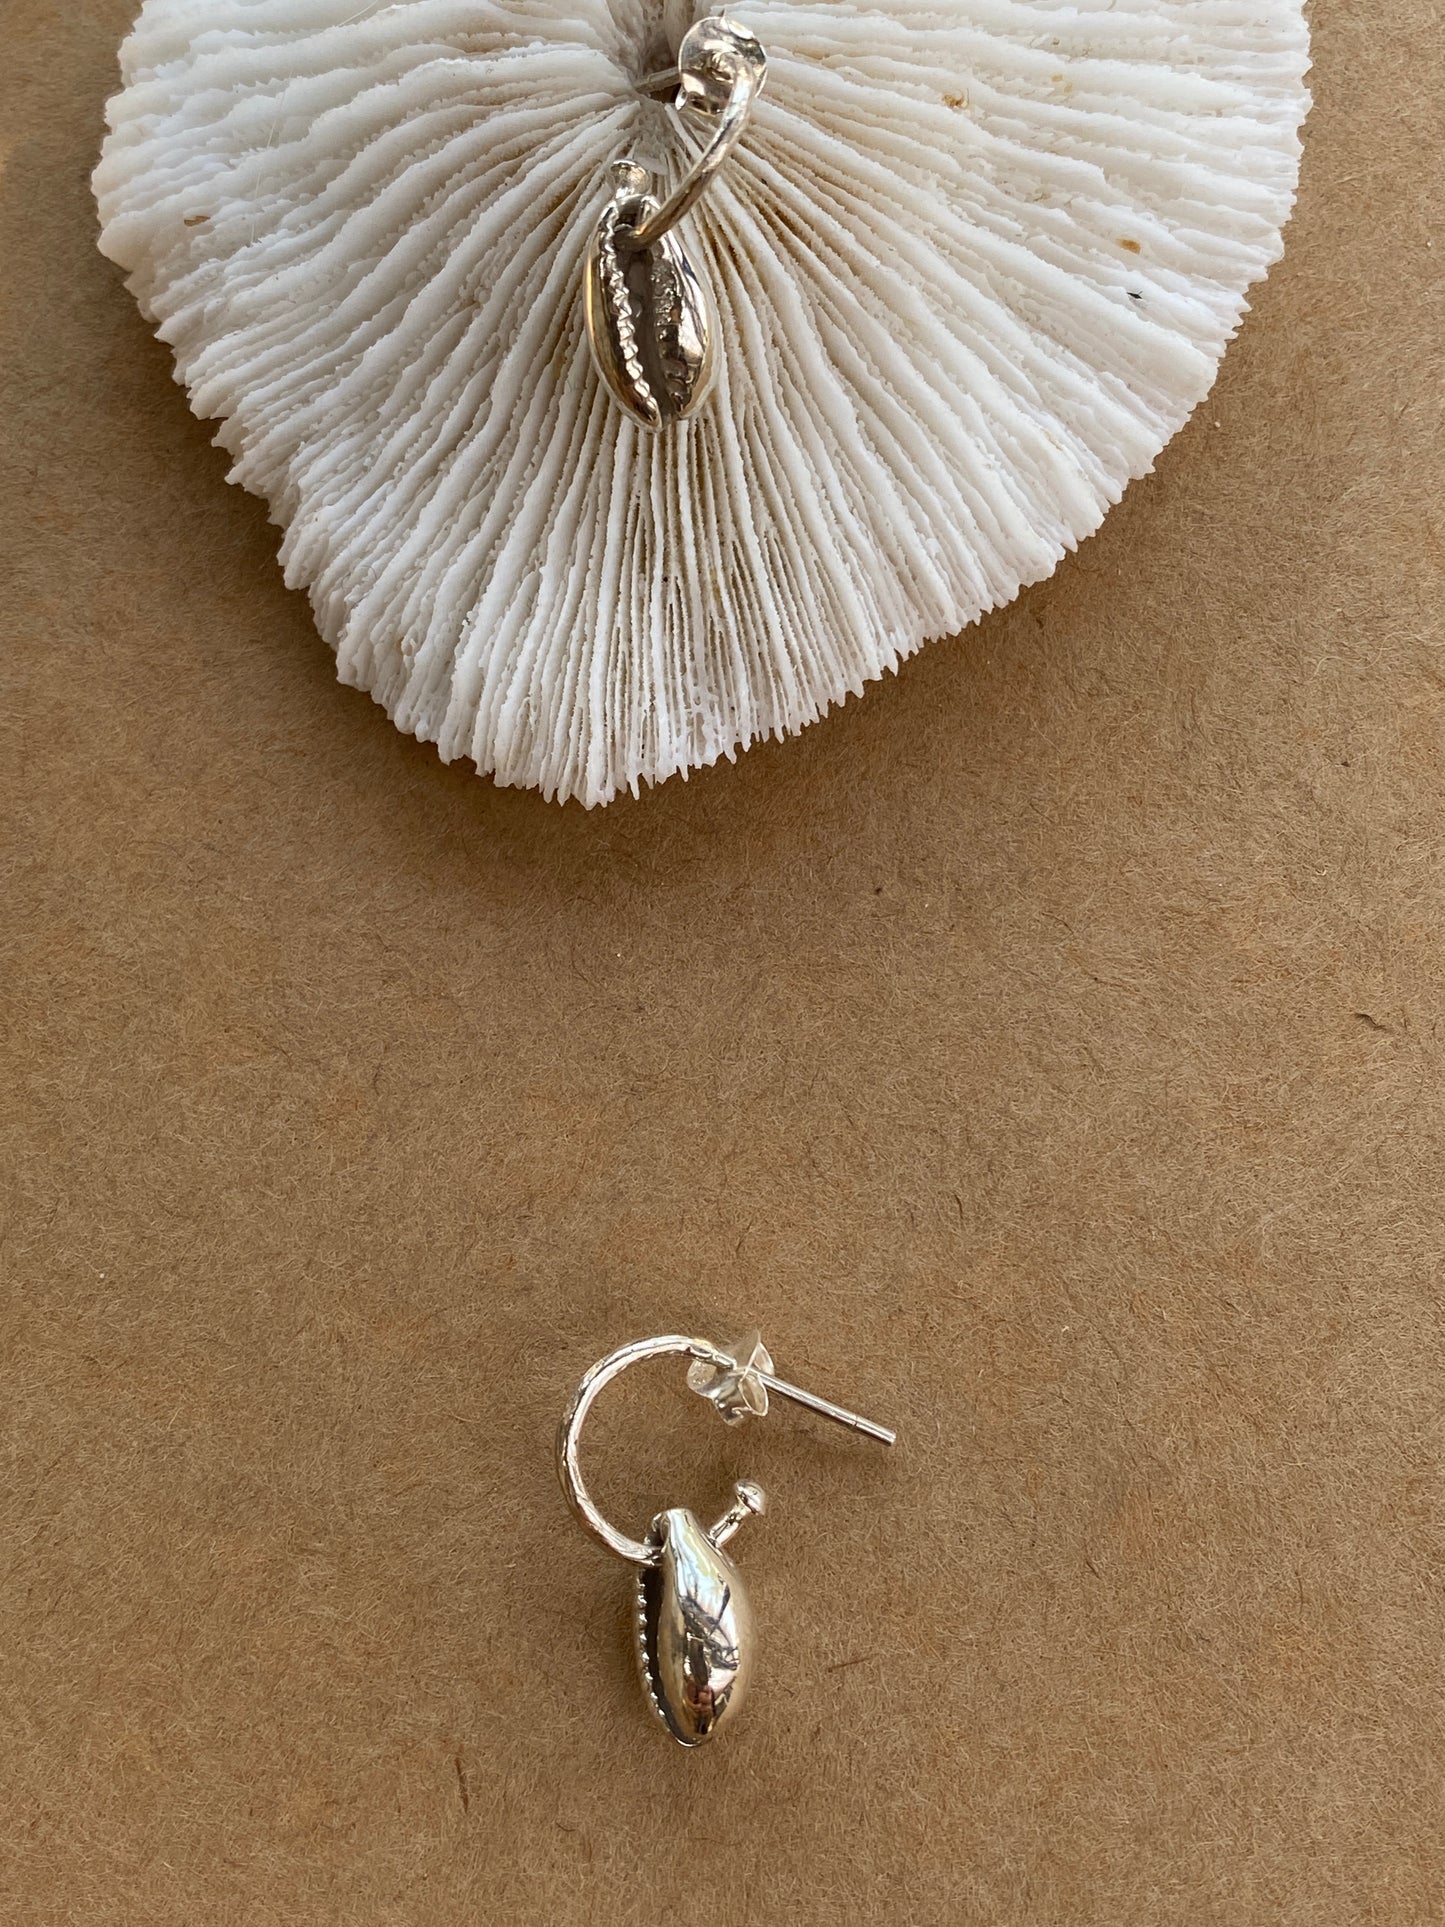 Bali Cori Shell earrings loops in Silver